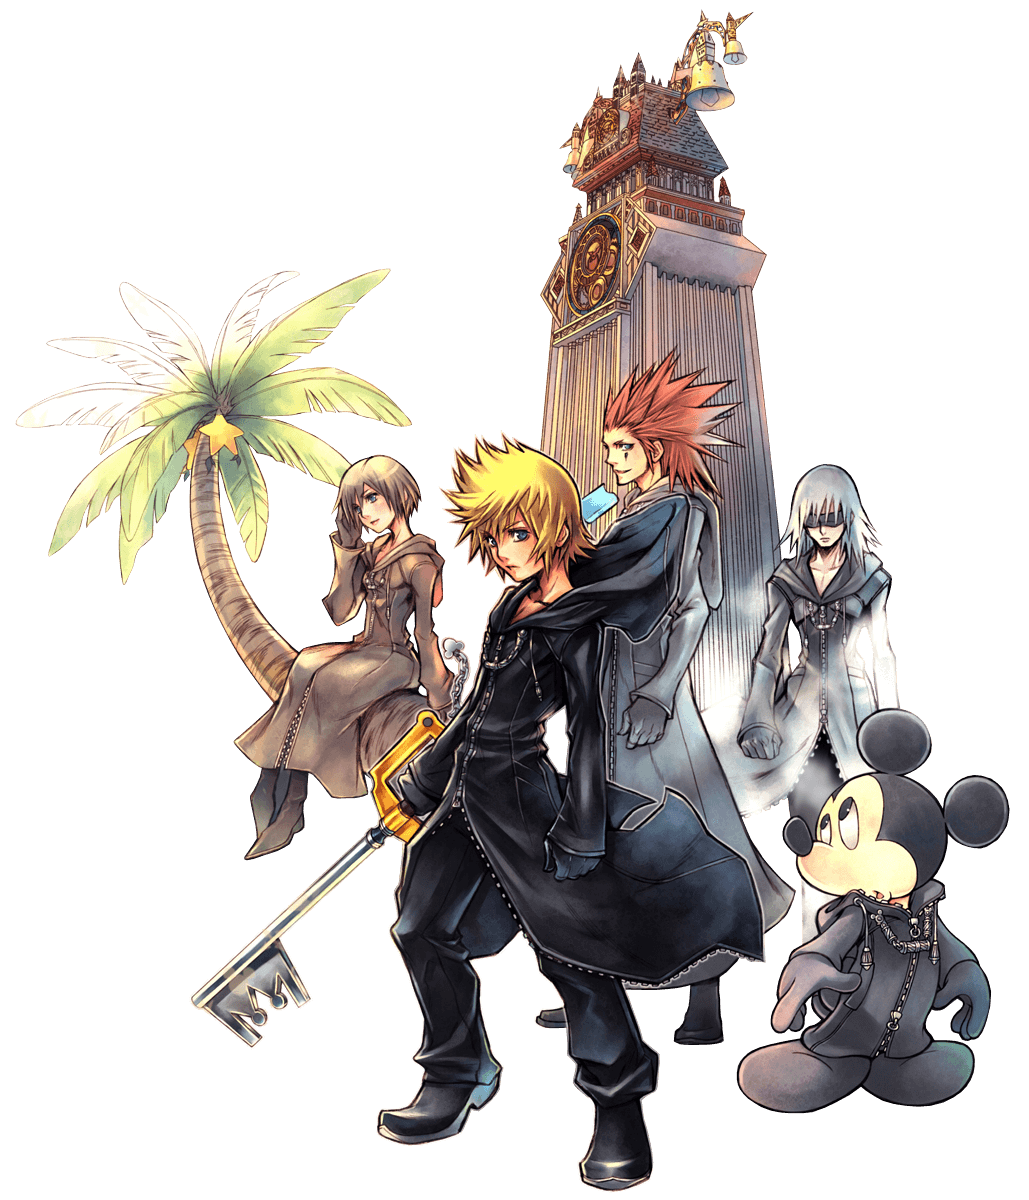 Index Of Kingdom Hearts 358 2 Days Artwork Promotional Artwork